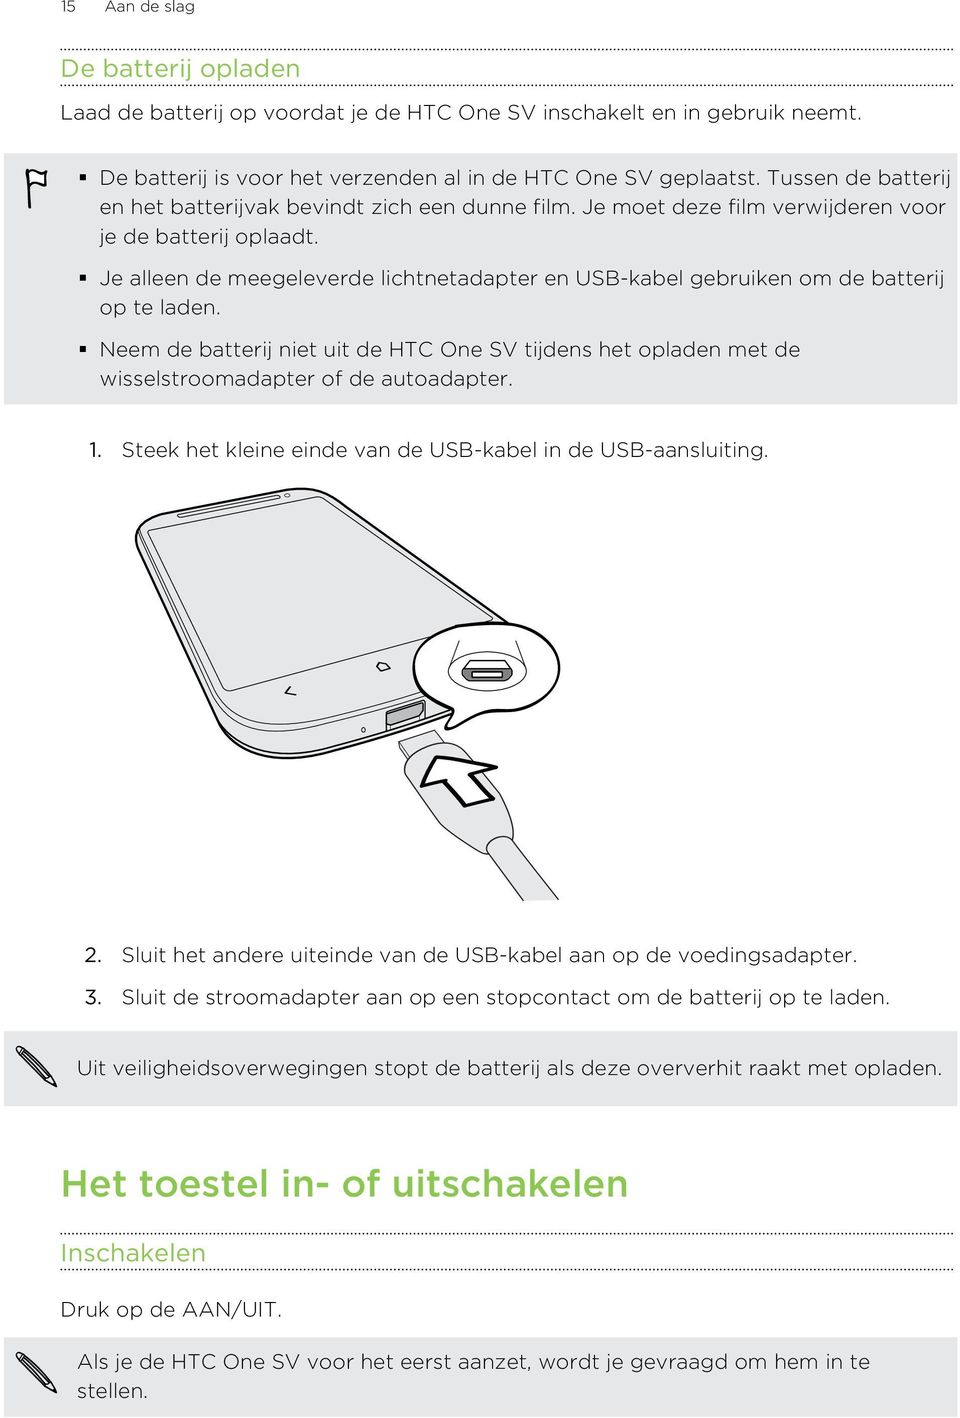 Je alleen de meegeleverde lichtnetadapter en USB-kabel gebruiken om de batterij op te laden. Neem de batterij niet uit de HTC One SV tijdens het opladen met de wisselstroomadapter of de autoadapter.